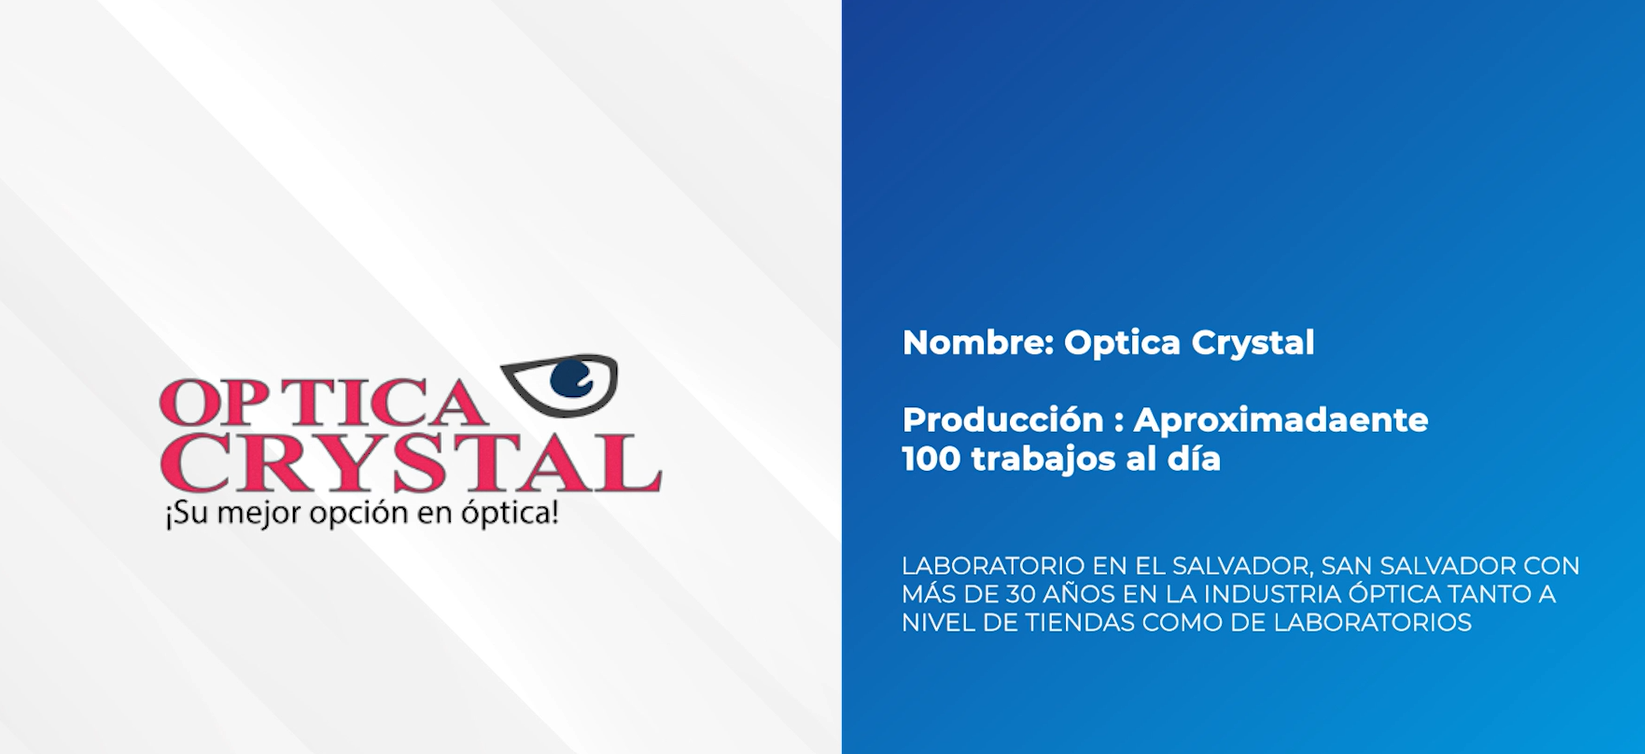 Optica Crystal, laboratorio en El Salvador, con más de 30 años de experiencia en la industria óptica tanto a nivel de tiendas como de laboratorios, se une a la “Ruta de la Experiencia” de Coburn Technologies.